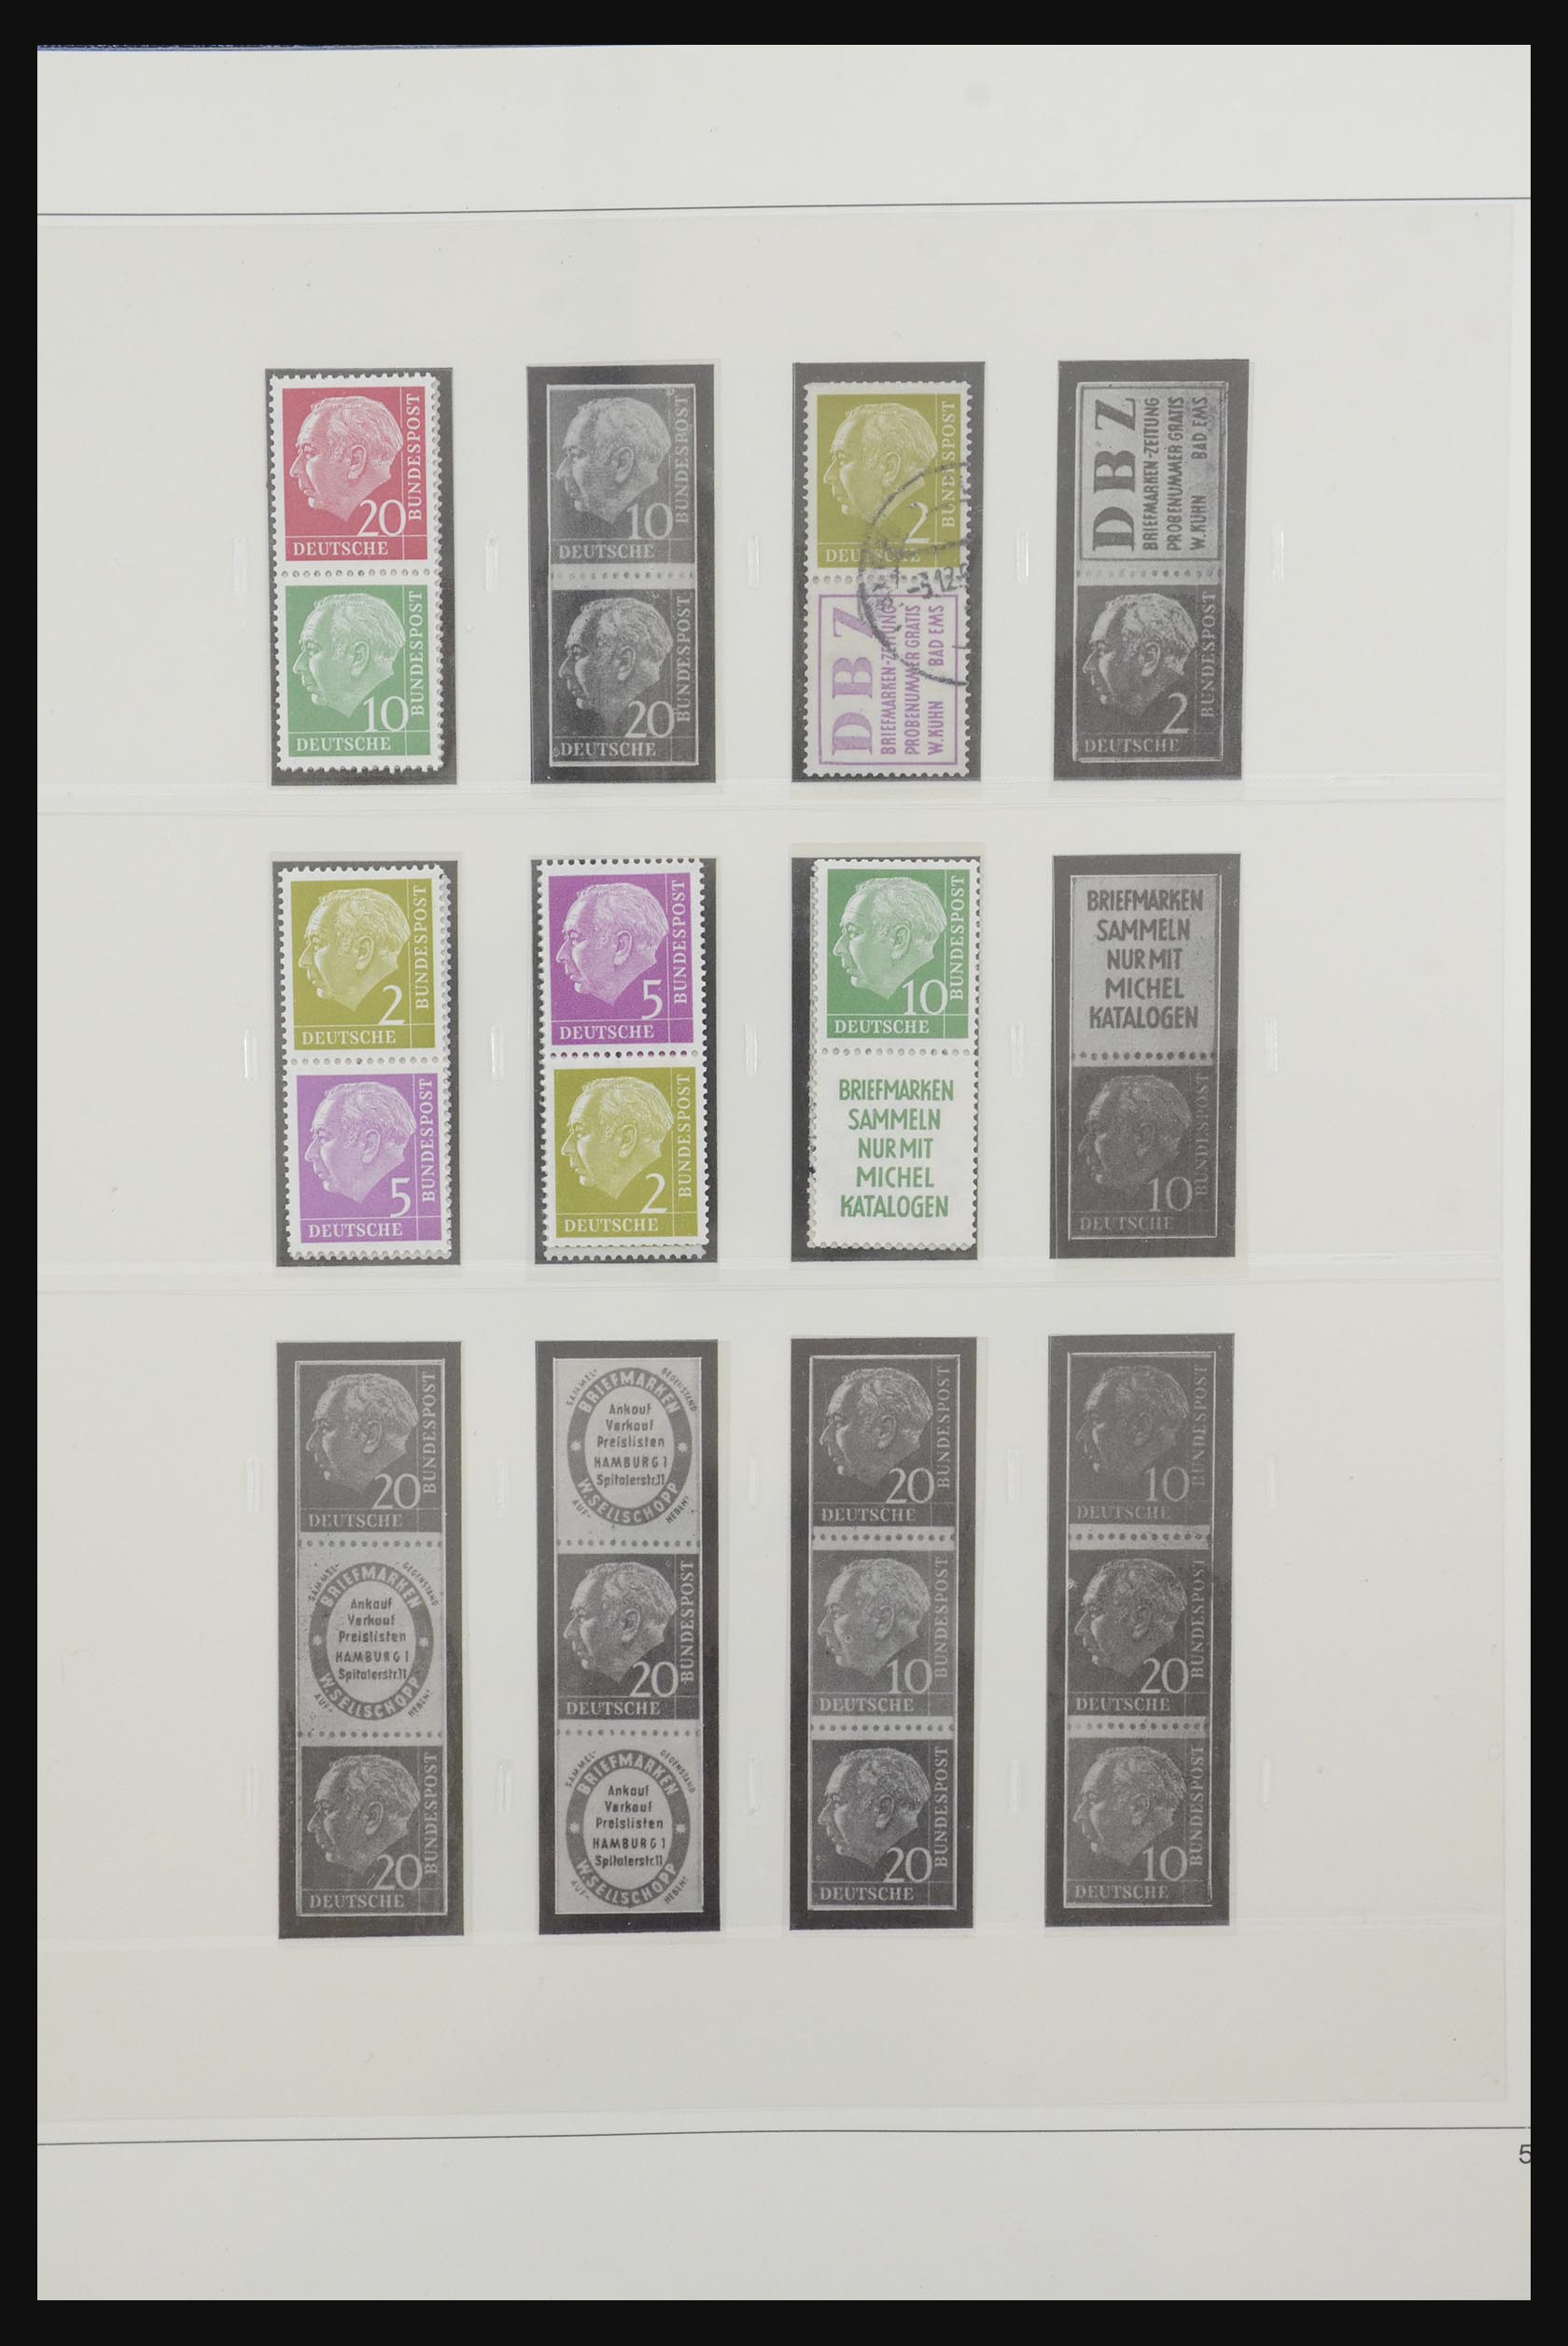 31842 005 - 31842 Bundespost combinations 1951-2003.